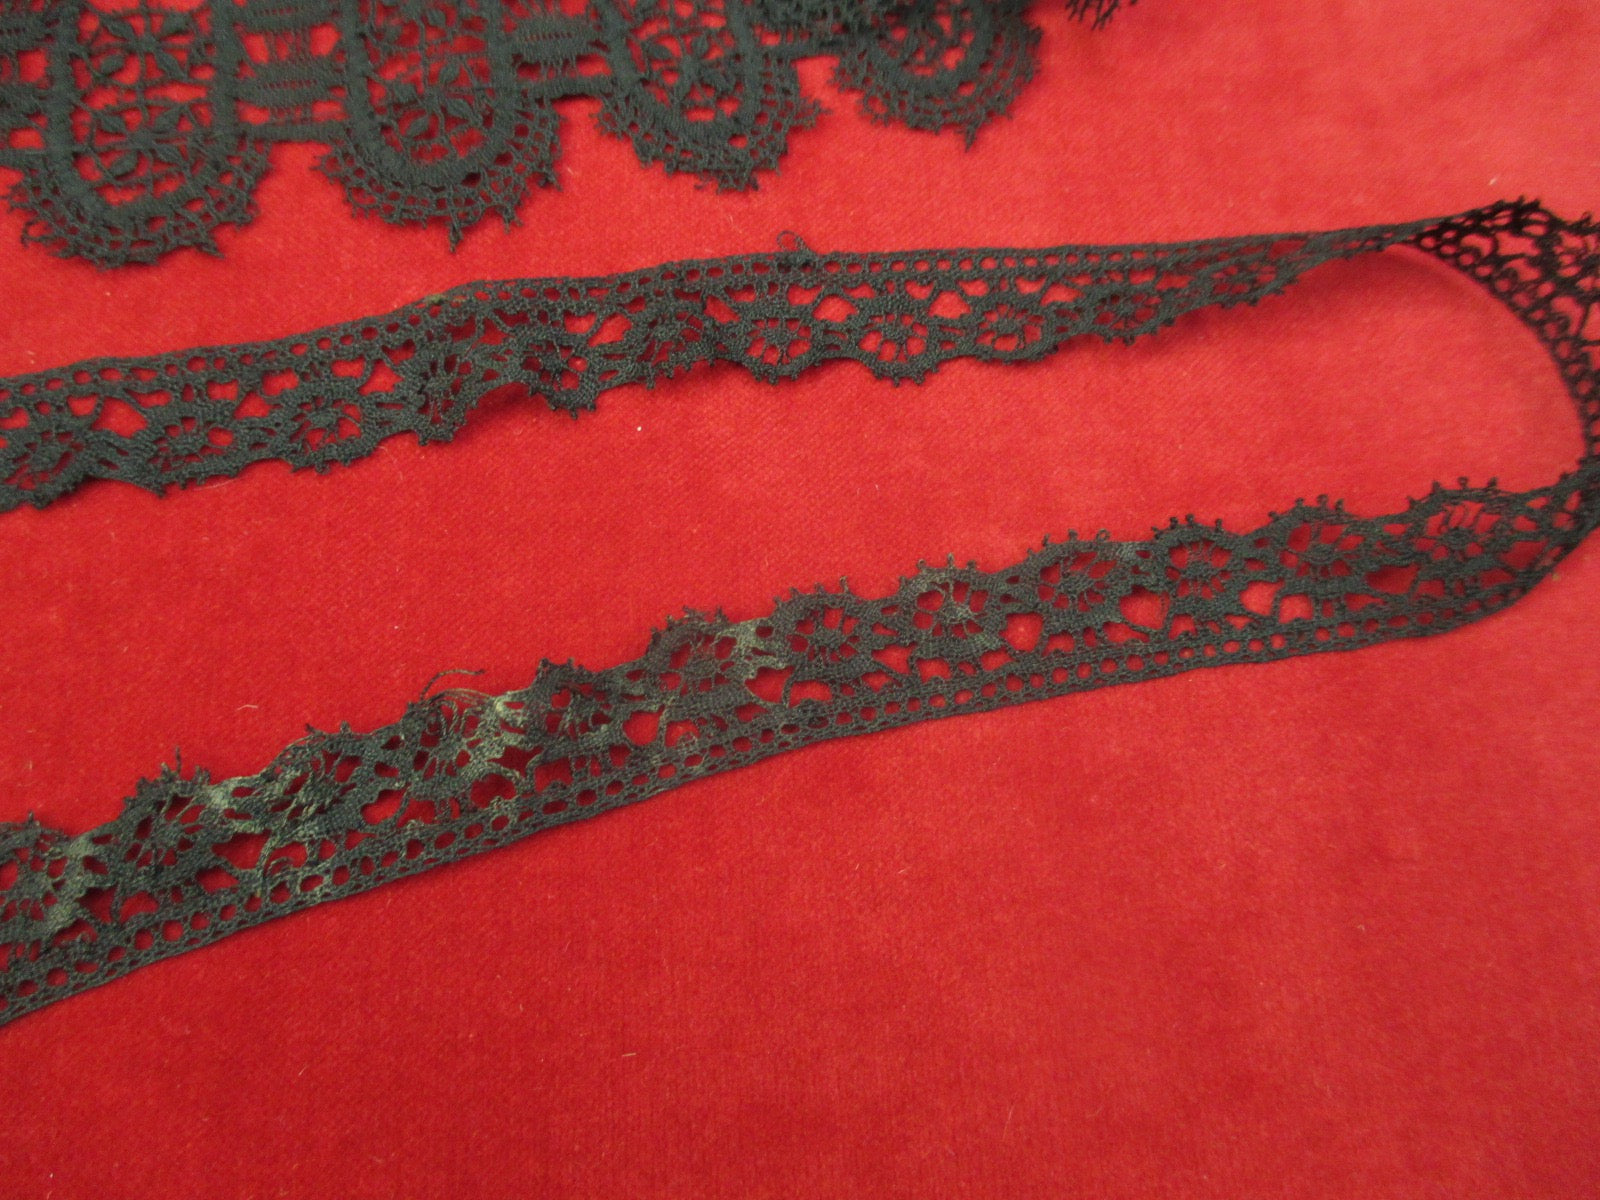 Antique Victorian Black Lace Trim 4 pieces